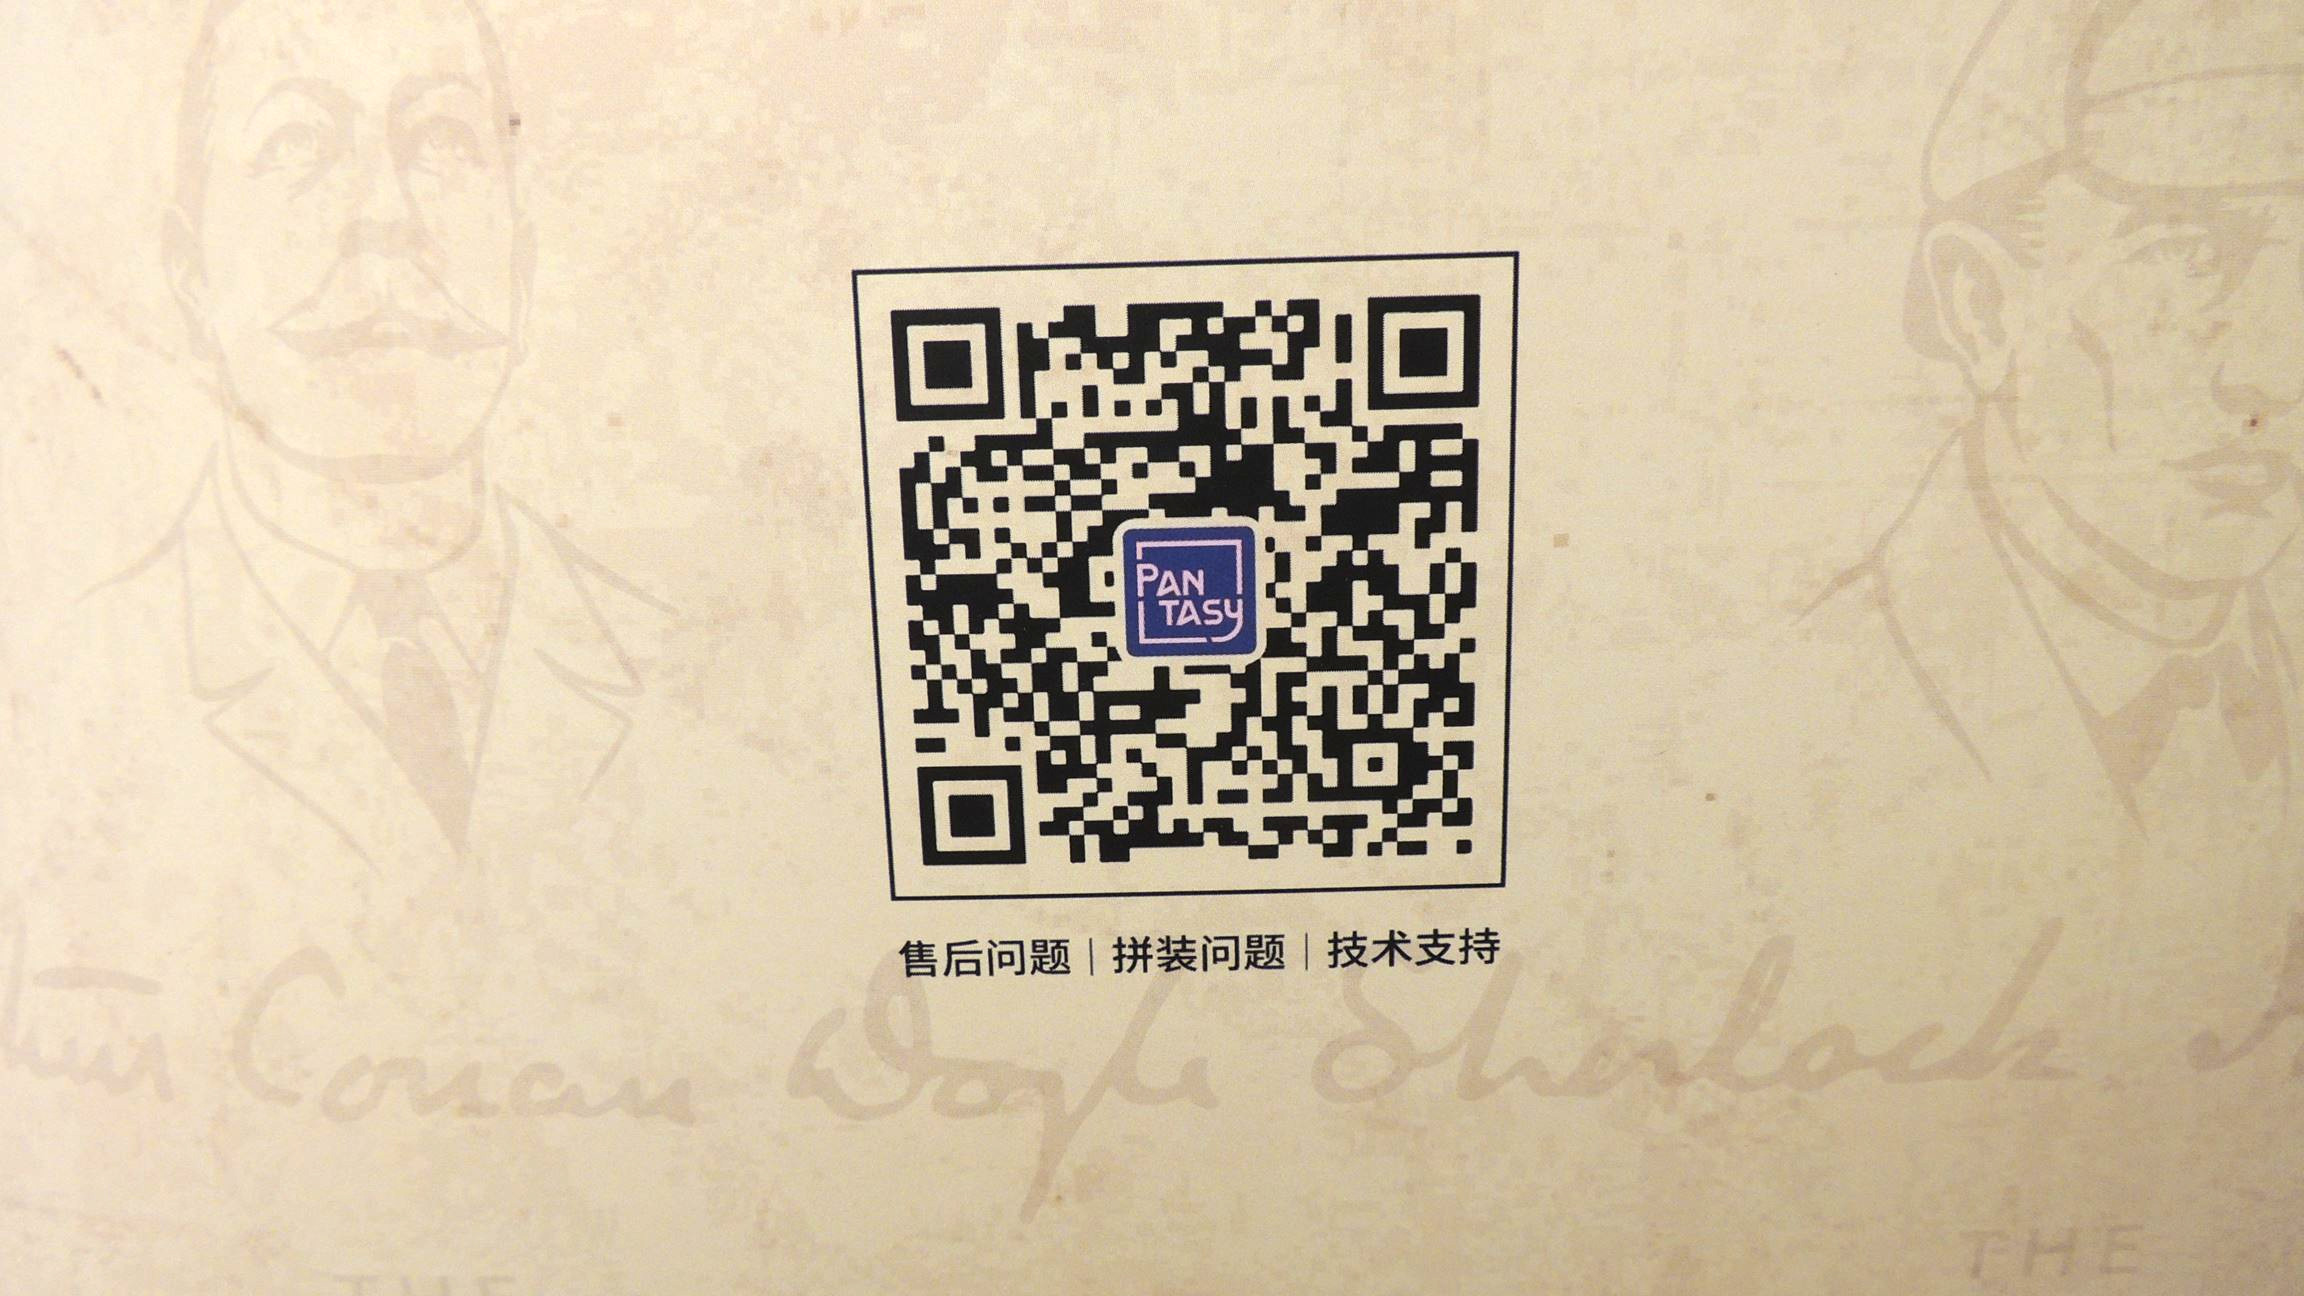 QR-Code für den WeChat von Pantasy in China.